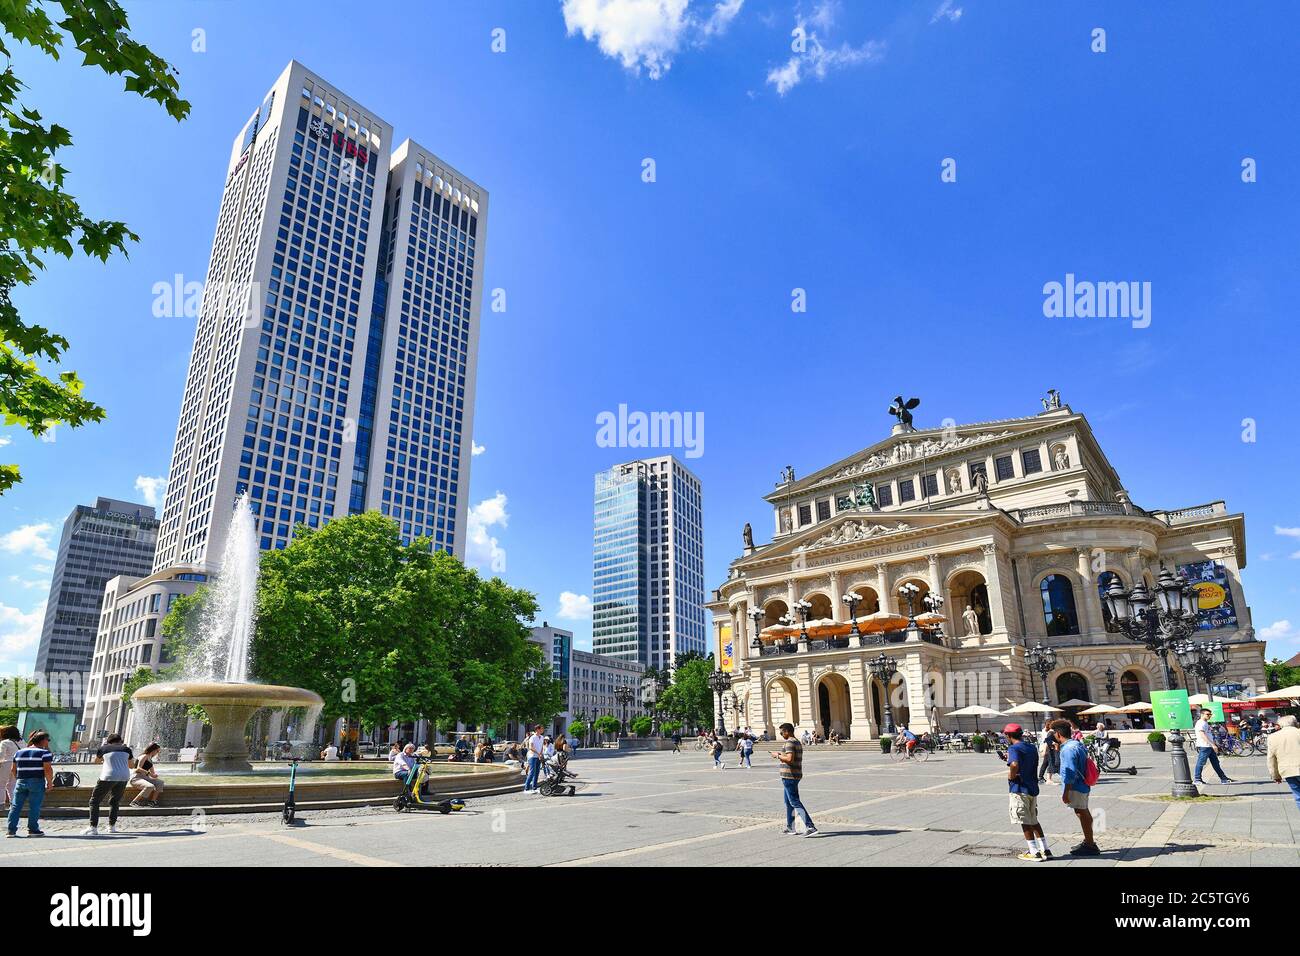 Frankfurt am Main - Juni 2020: Alte historische Oper mit dem Namen "Alte Oper" und Turm der Investmentbank "UBS" Stockfoto